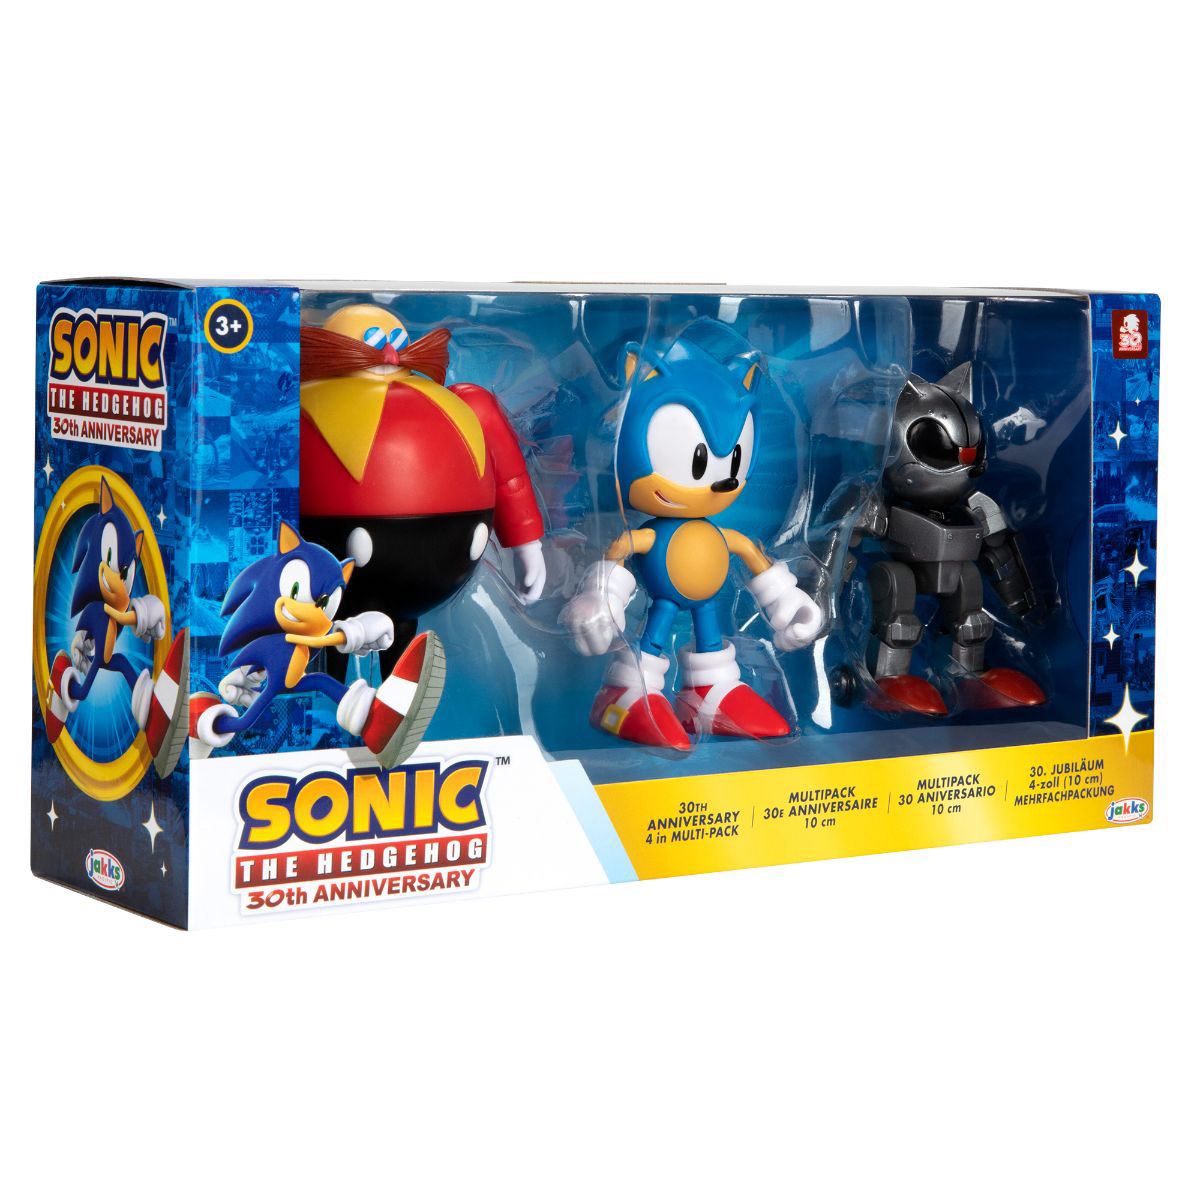 SEGA celebrará el 30.º aniversario de Sonic con una figura de colección  grandiosa